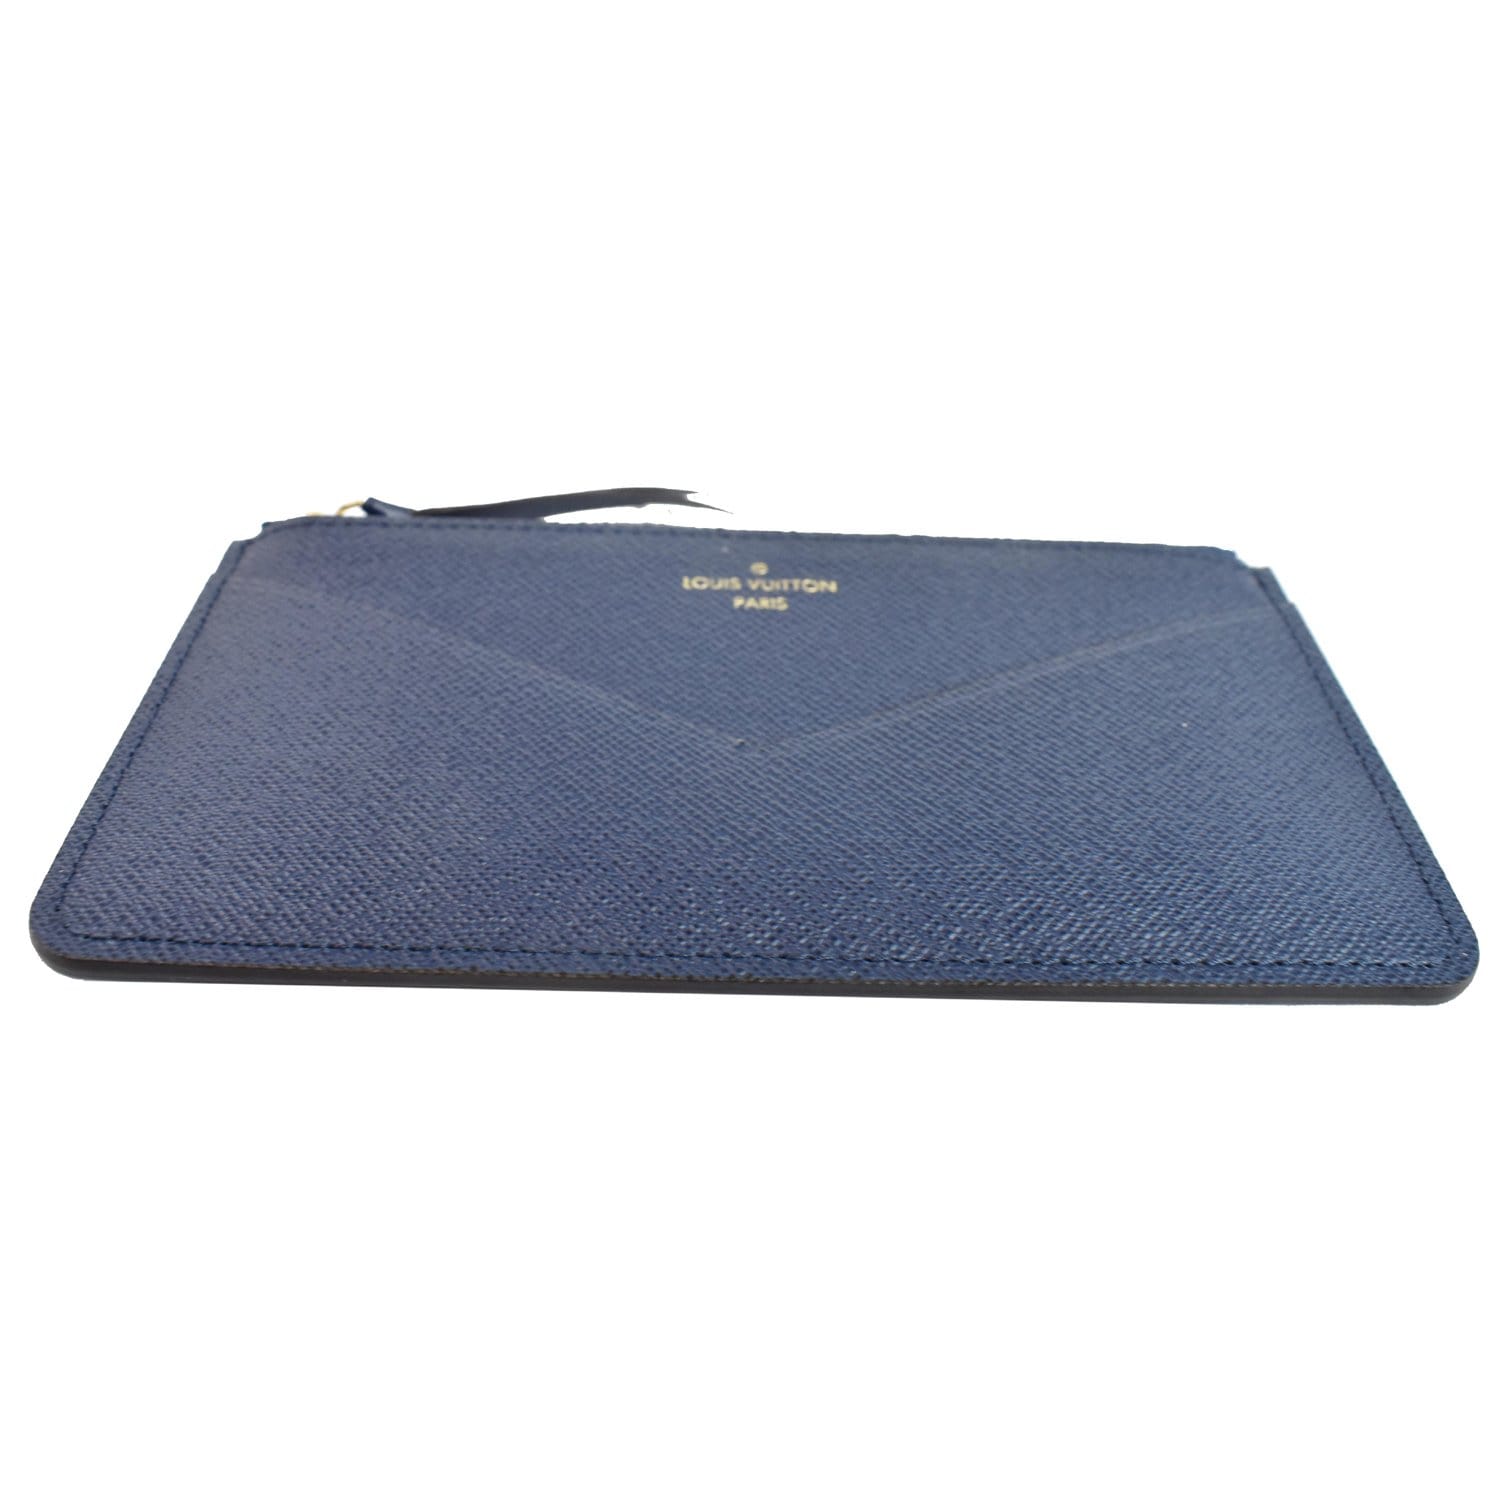 Auth Louis Vuitton Portefeuille COMETE Long Wallet Blue Marine M68582 -  r8838a